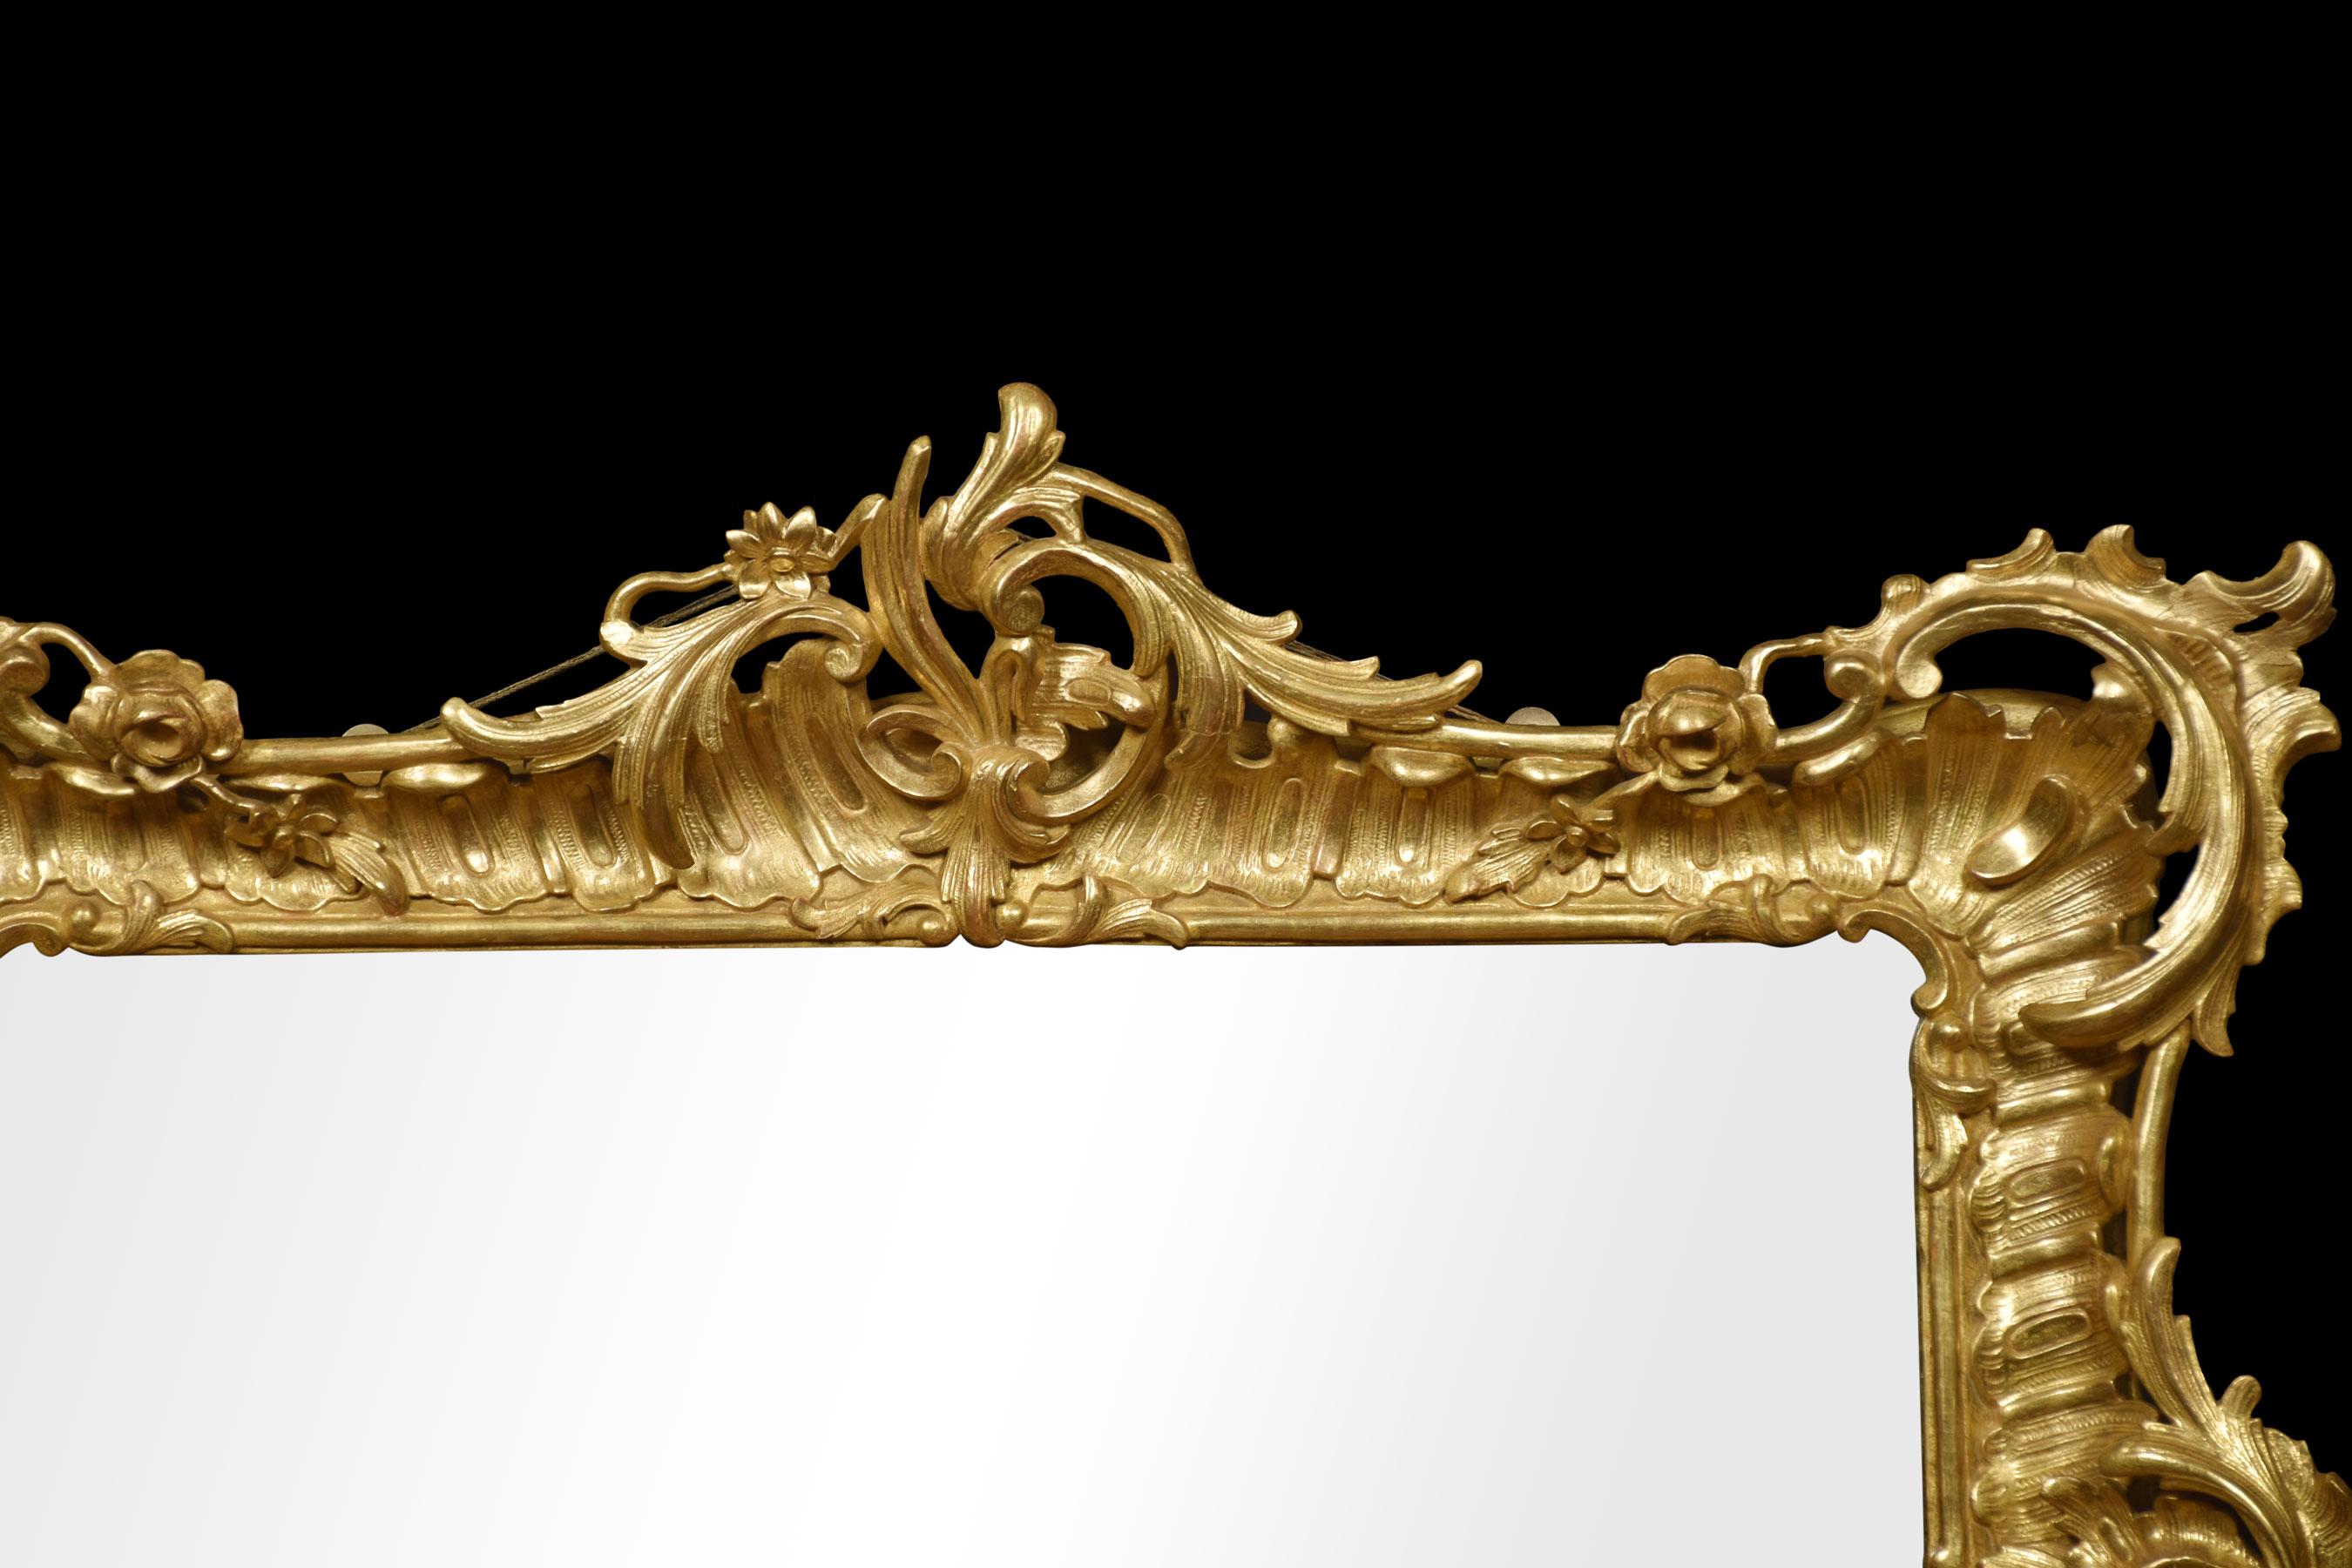 Grand miroir mural en bois doré du XIXe siècle, de style rococo, dont le cadre à volutes feuillagées entoure la plaque de miroir d'origine.
Dimensions
Hauteur 39.5 pouces
Largeur 46.5 pouces
Profondeur 5 pouces.